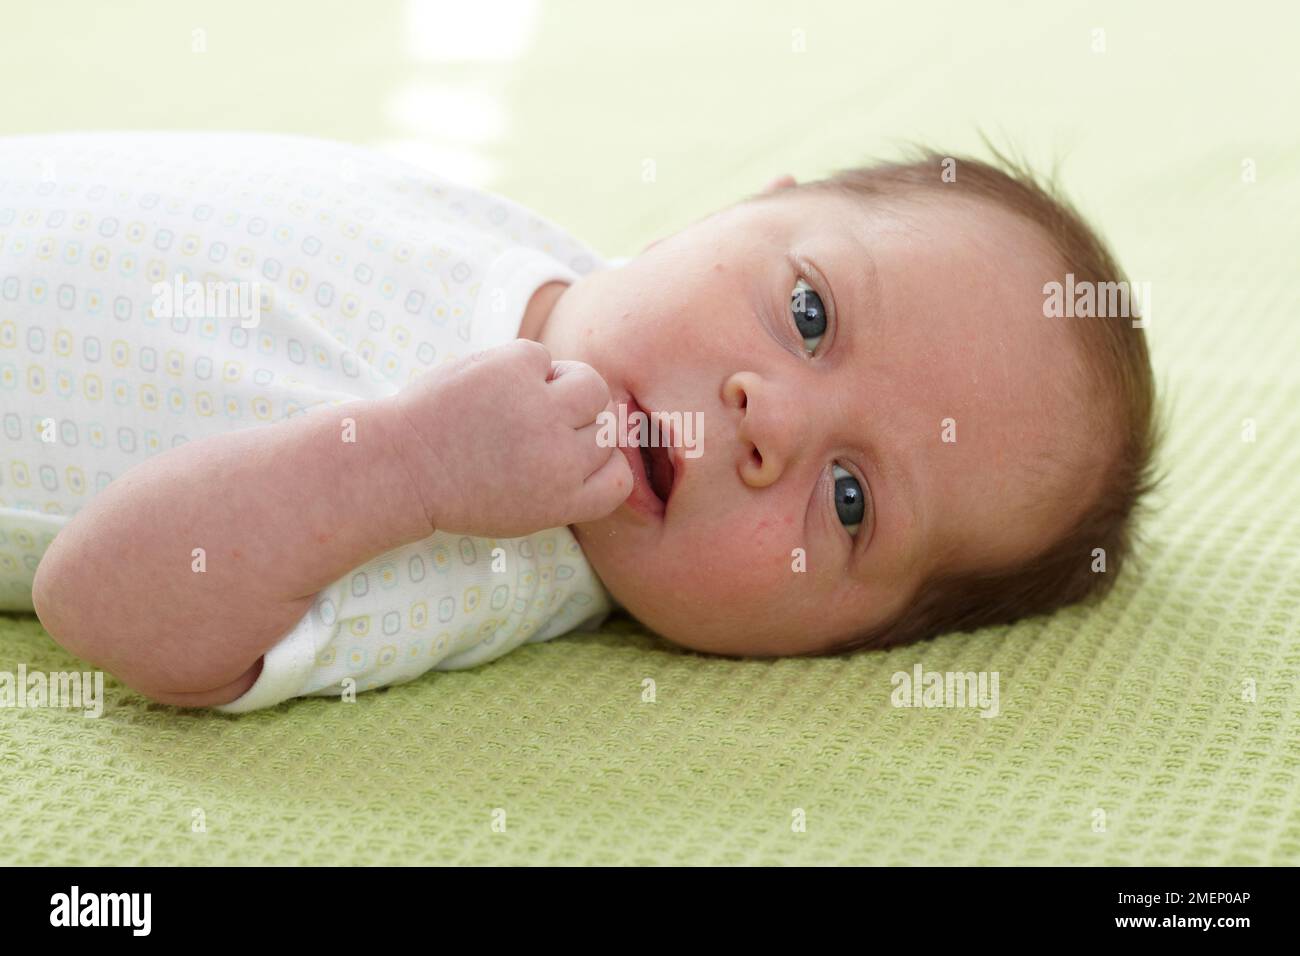 Bébé garçon (3 semaines) couché sur le dos sur une couverture verte, gros plan Banque D'Images